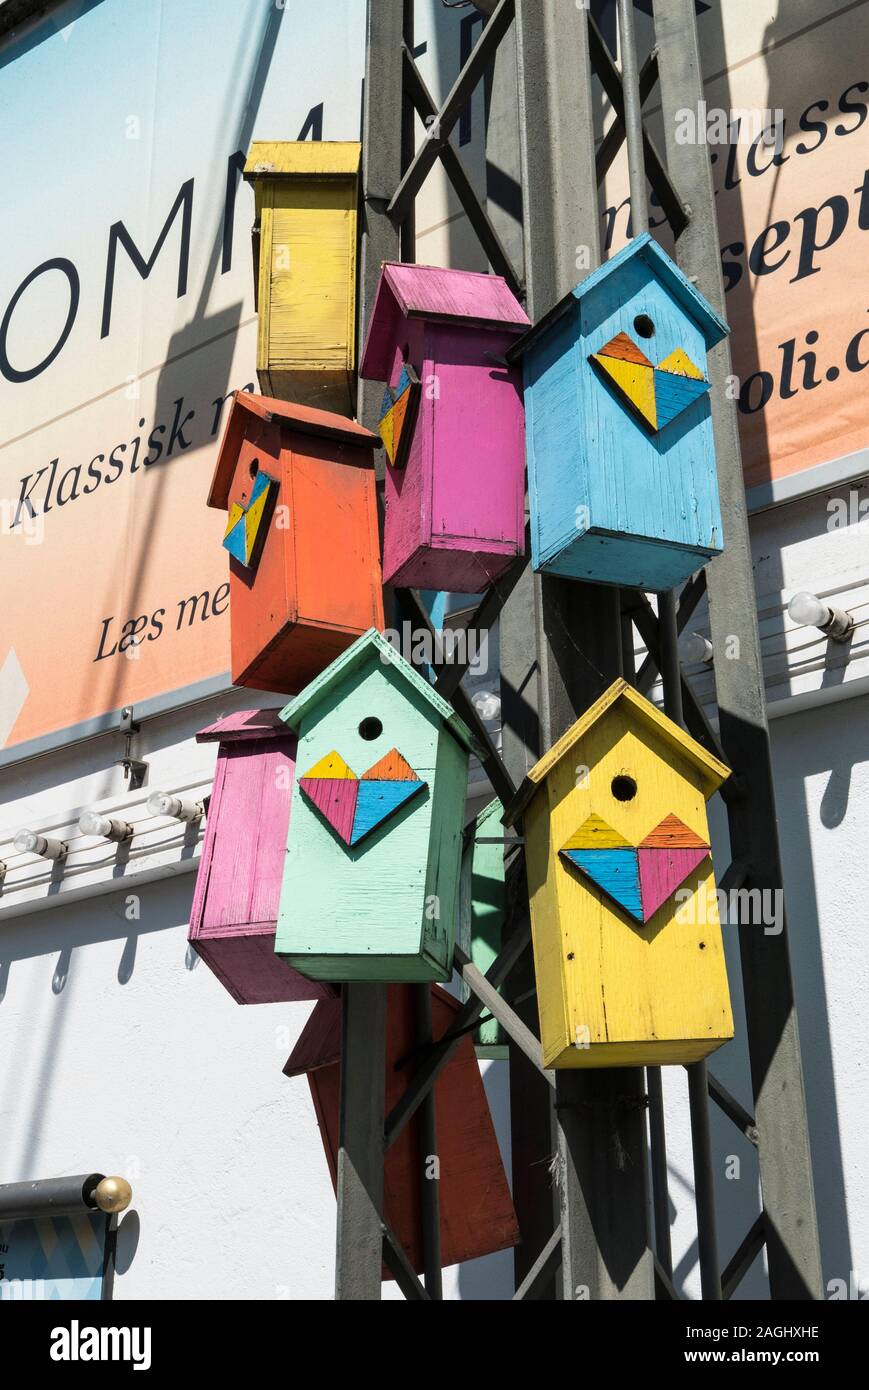 Boîtes décorées et oiseaux colorés à Copenhague, Danemark Banque D'Images